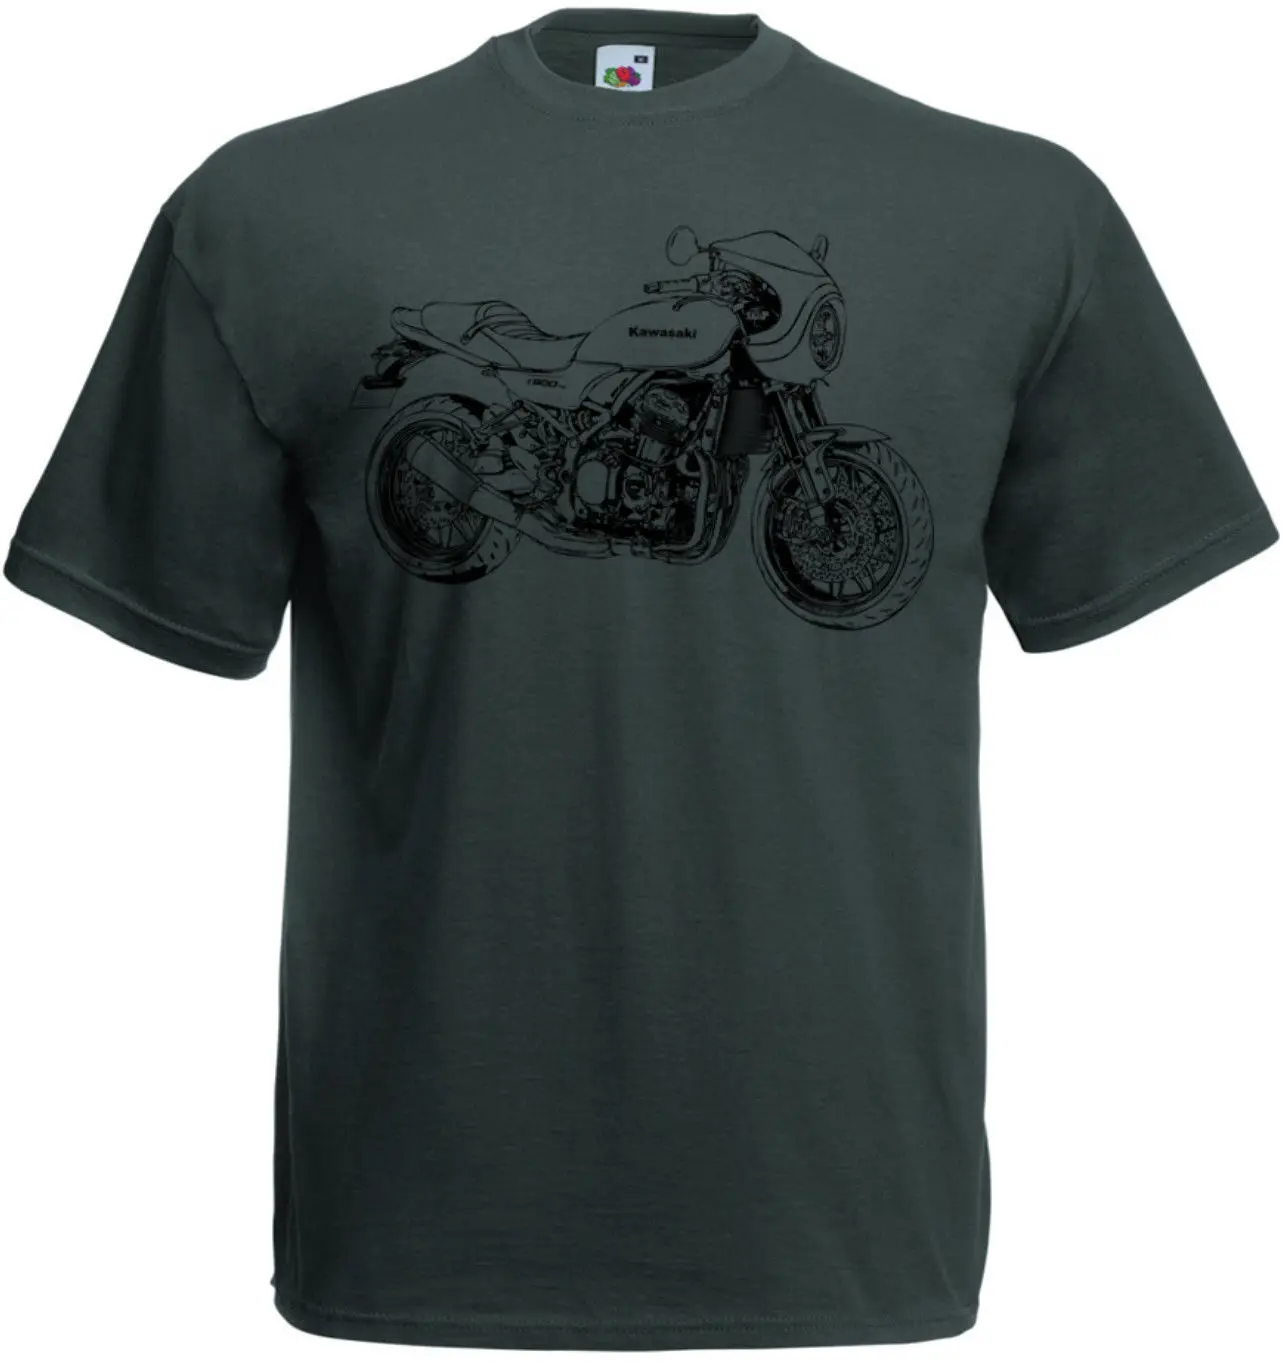 

New Summer Men Hip Hop Tee Shirt Z900Rs Cafe Racer Motorcycle T-Shirt Z 900Rs Cafe Slim T-Shirt Custom Aldult Teen Unisex Cotton